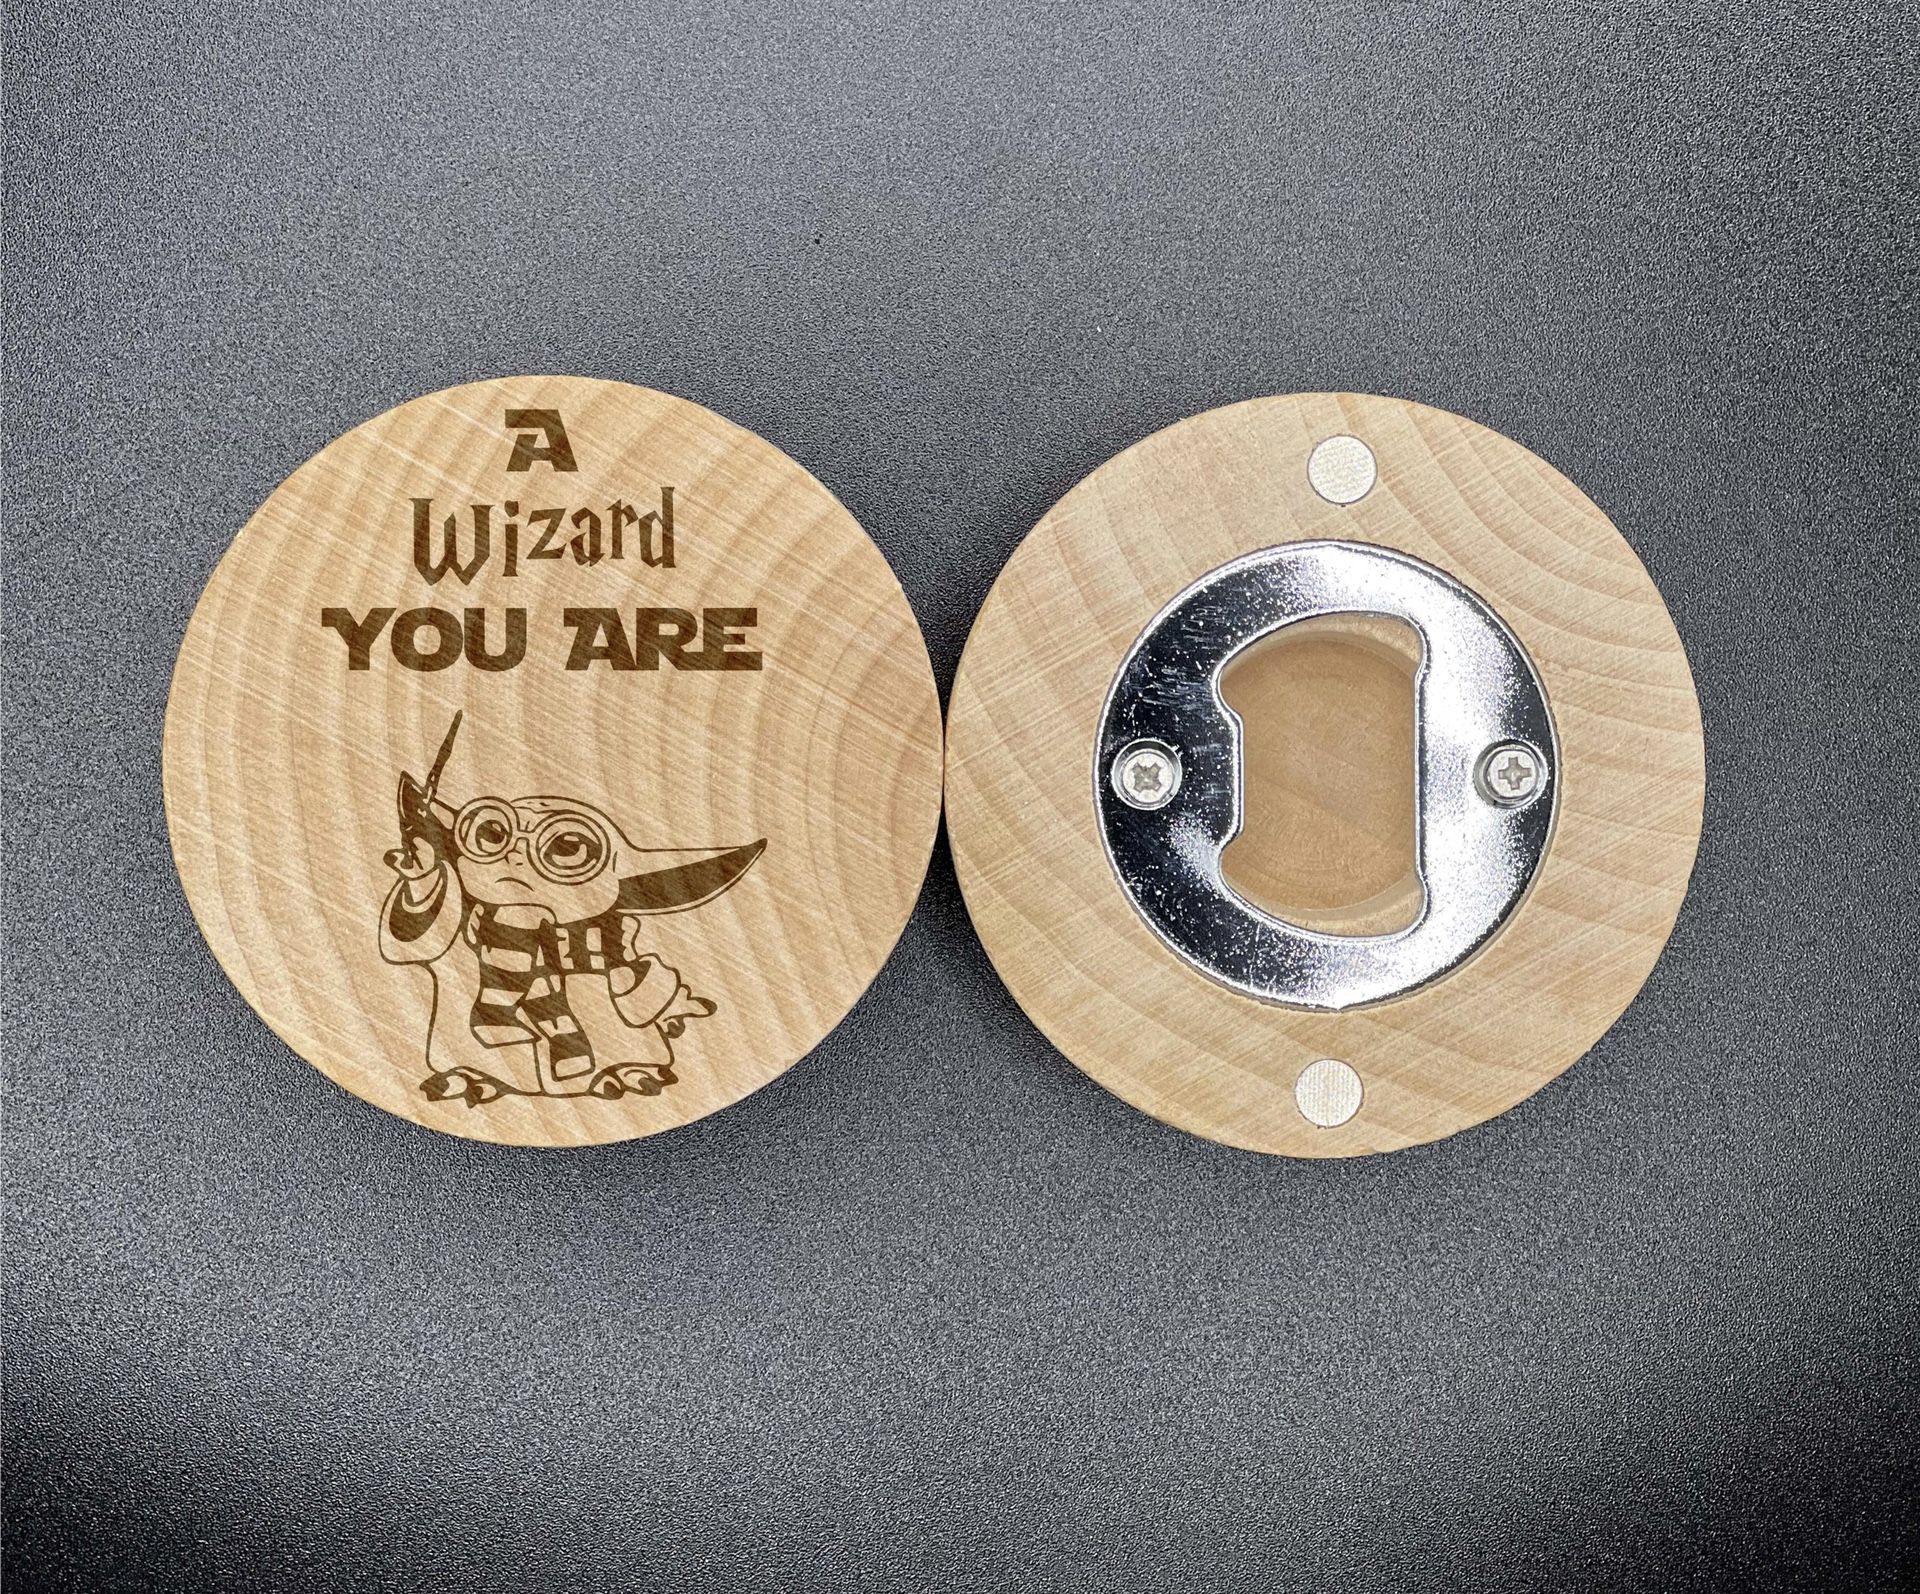 Harry yoda potter engraved wood fridge magnet bottle opener pop gift